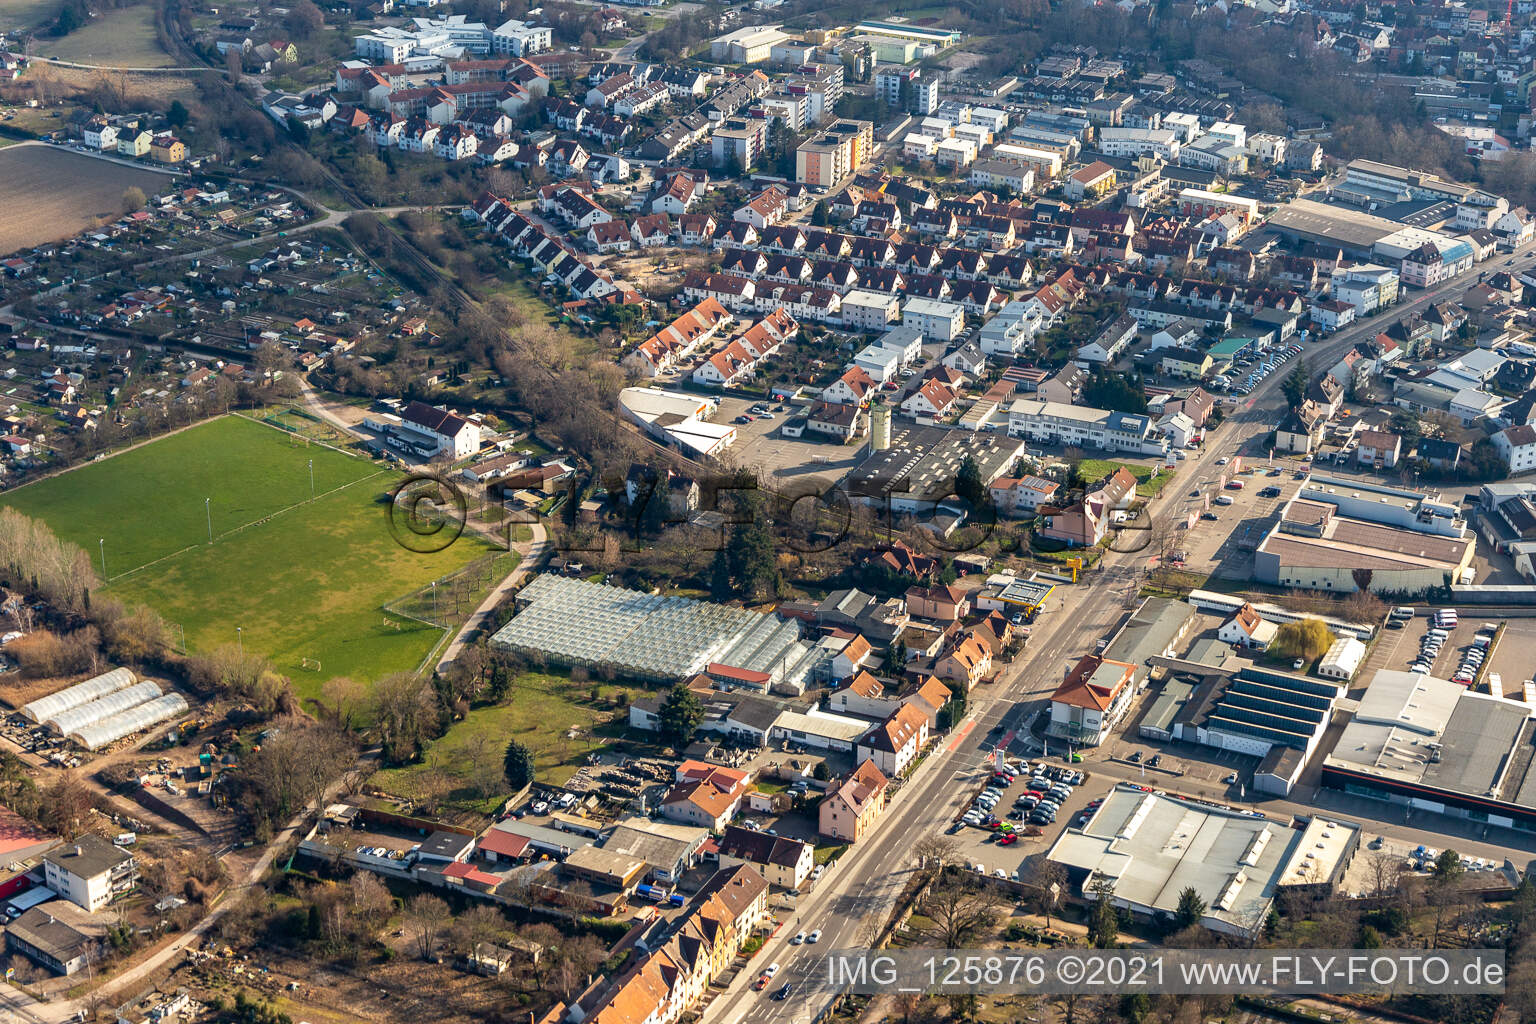 Vue aérienne de Terrain de sport au pâturage des vaches à Speyer dans le département Rhénanie-Palatinat, Allemagne